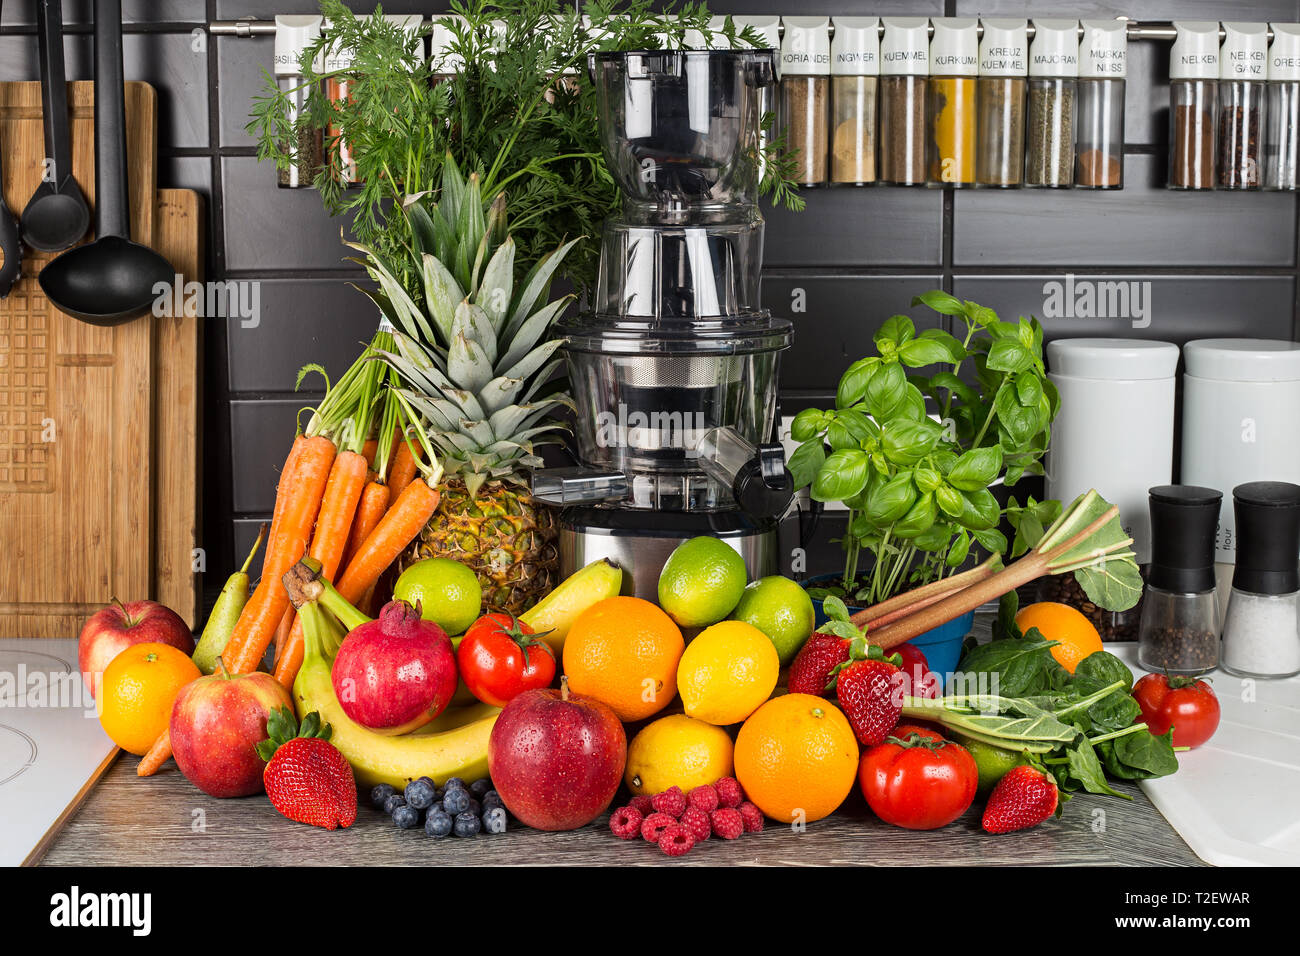 https://c8.alamy.com/compes/t2ewar/licuadora-lento-en-la-cocina-con-muchos-zumos-de-frutas-y-verduras-vida-sana-nutricion-concepto-antecedentes-t2ewar.jpg